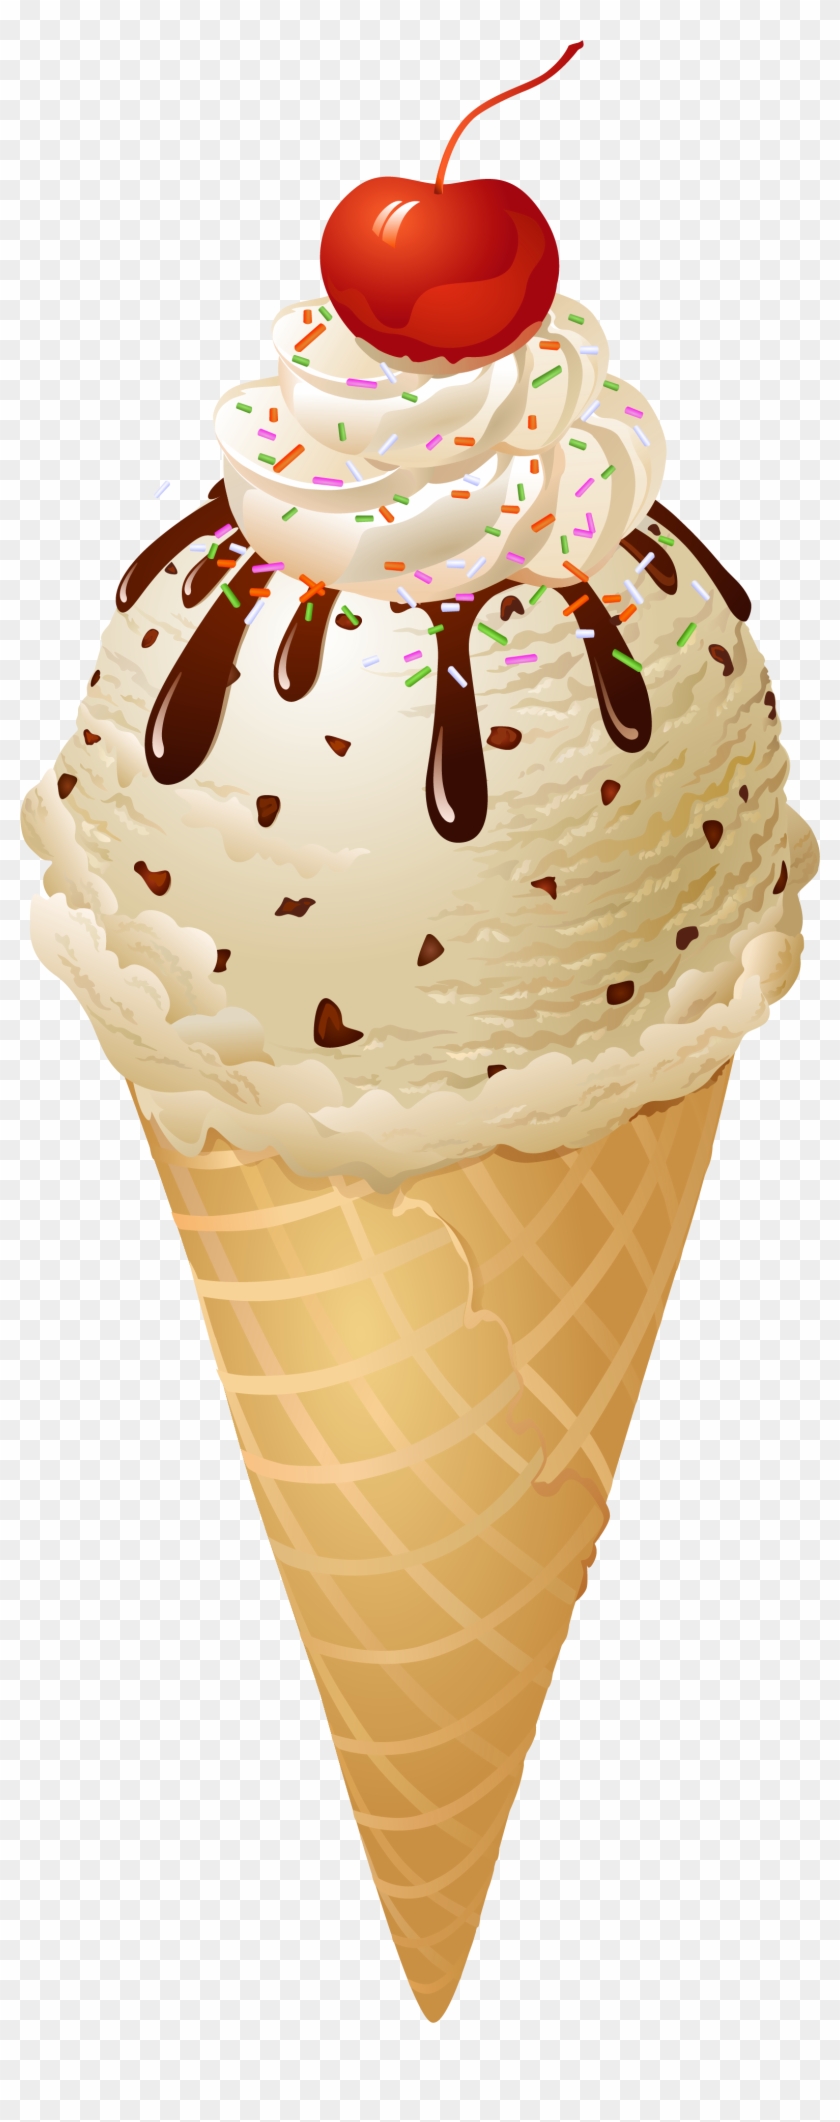 Transparent Ice Cream Cone Png Picture - Ice Cream Cone Transparent #547048